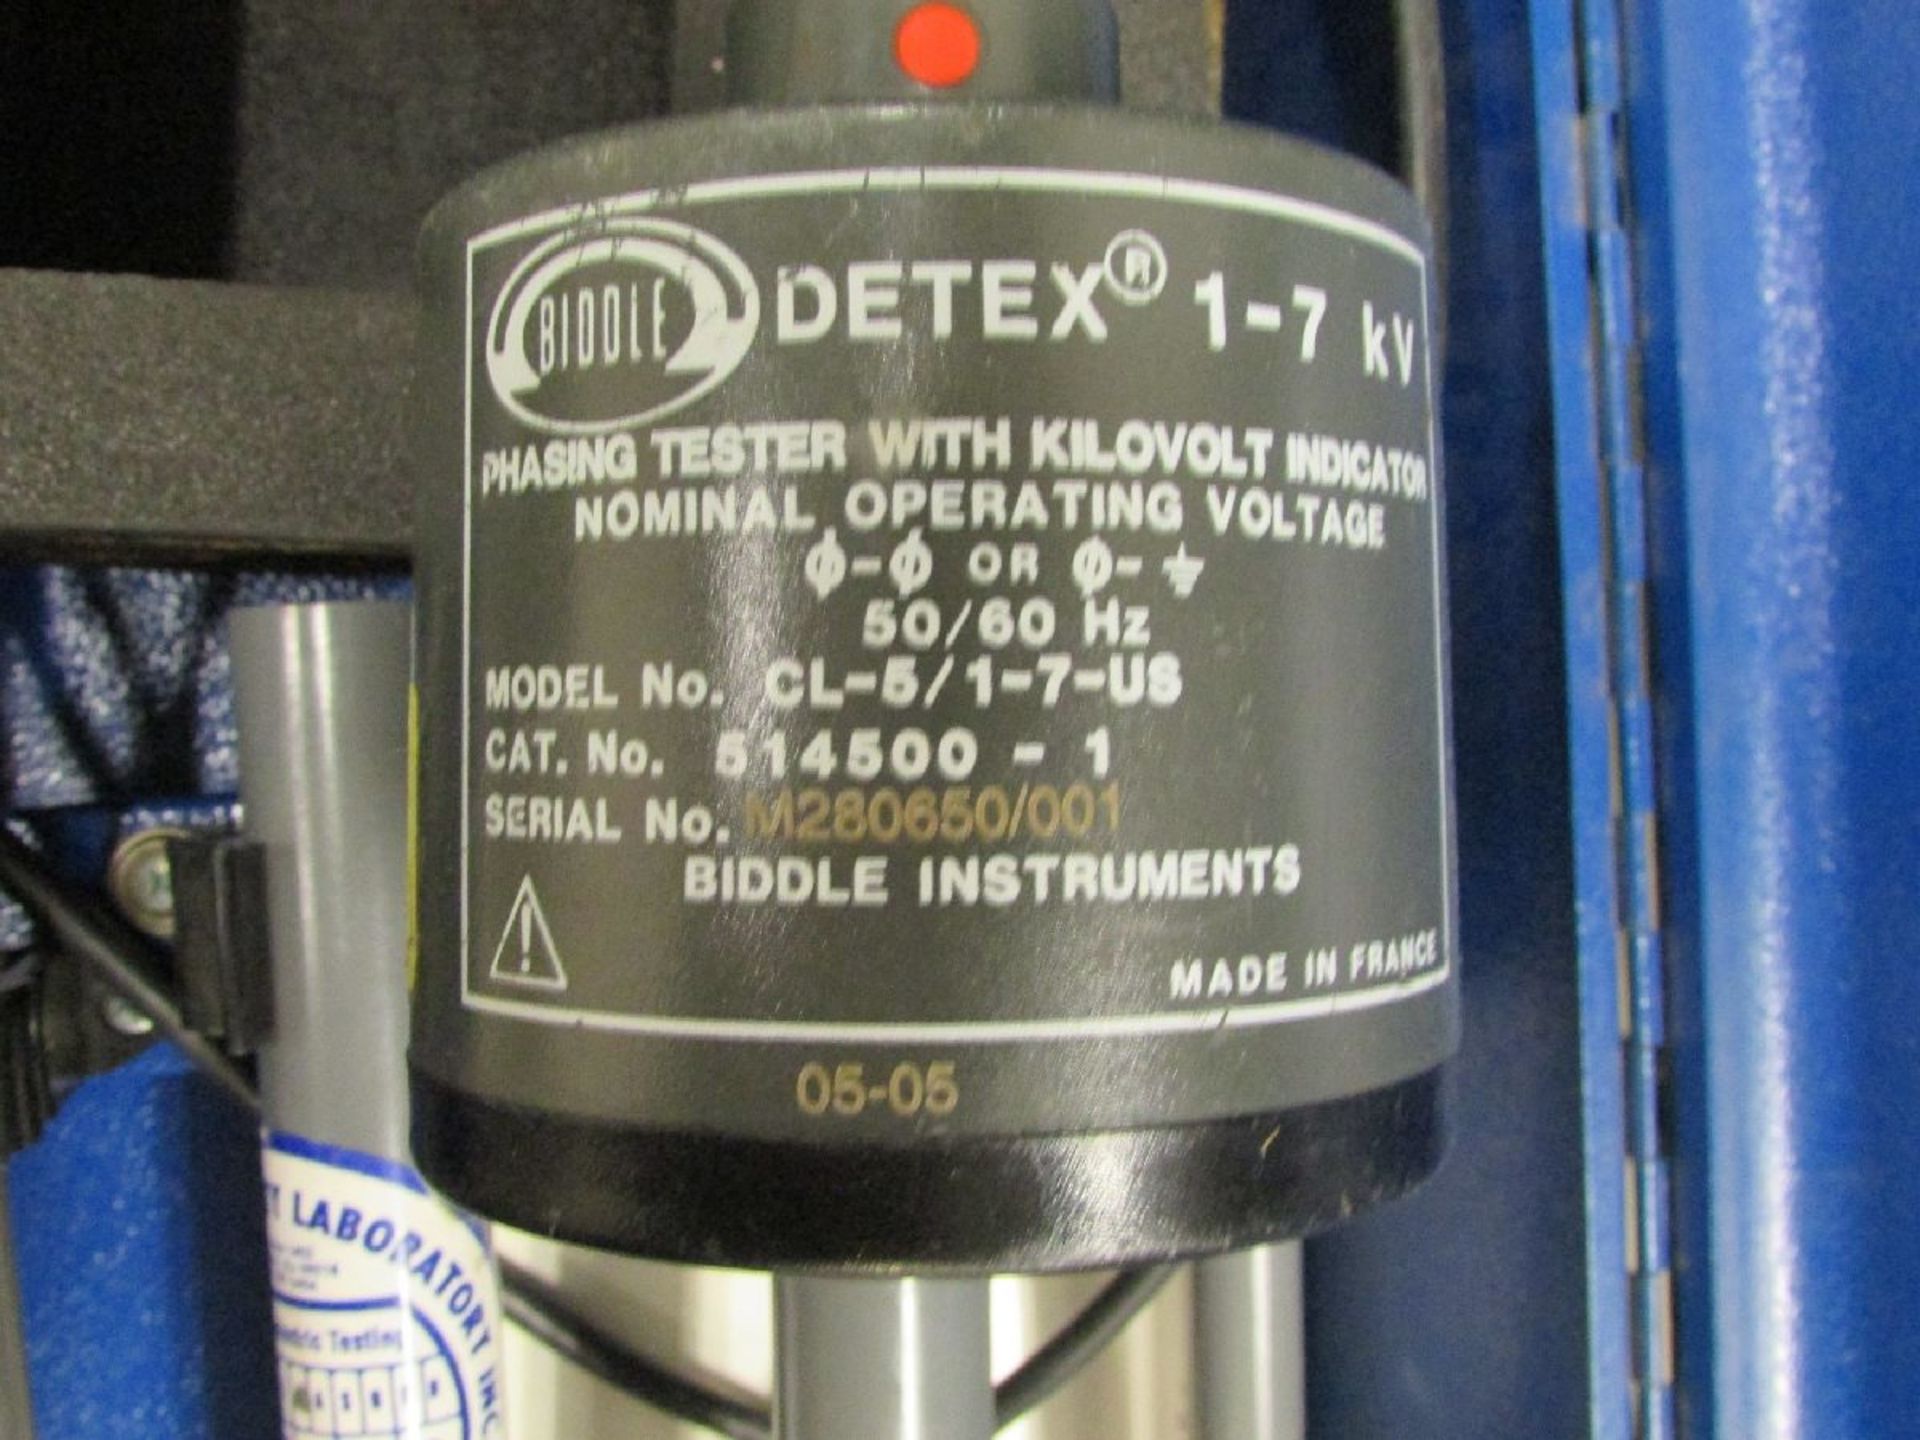 Biddle Instruments Model CL-5/1-7-US 1-7 kV Voltage & Phasing Tester - Image 3 of 4